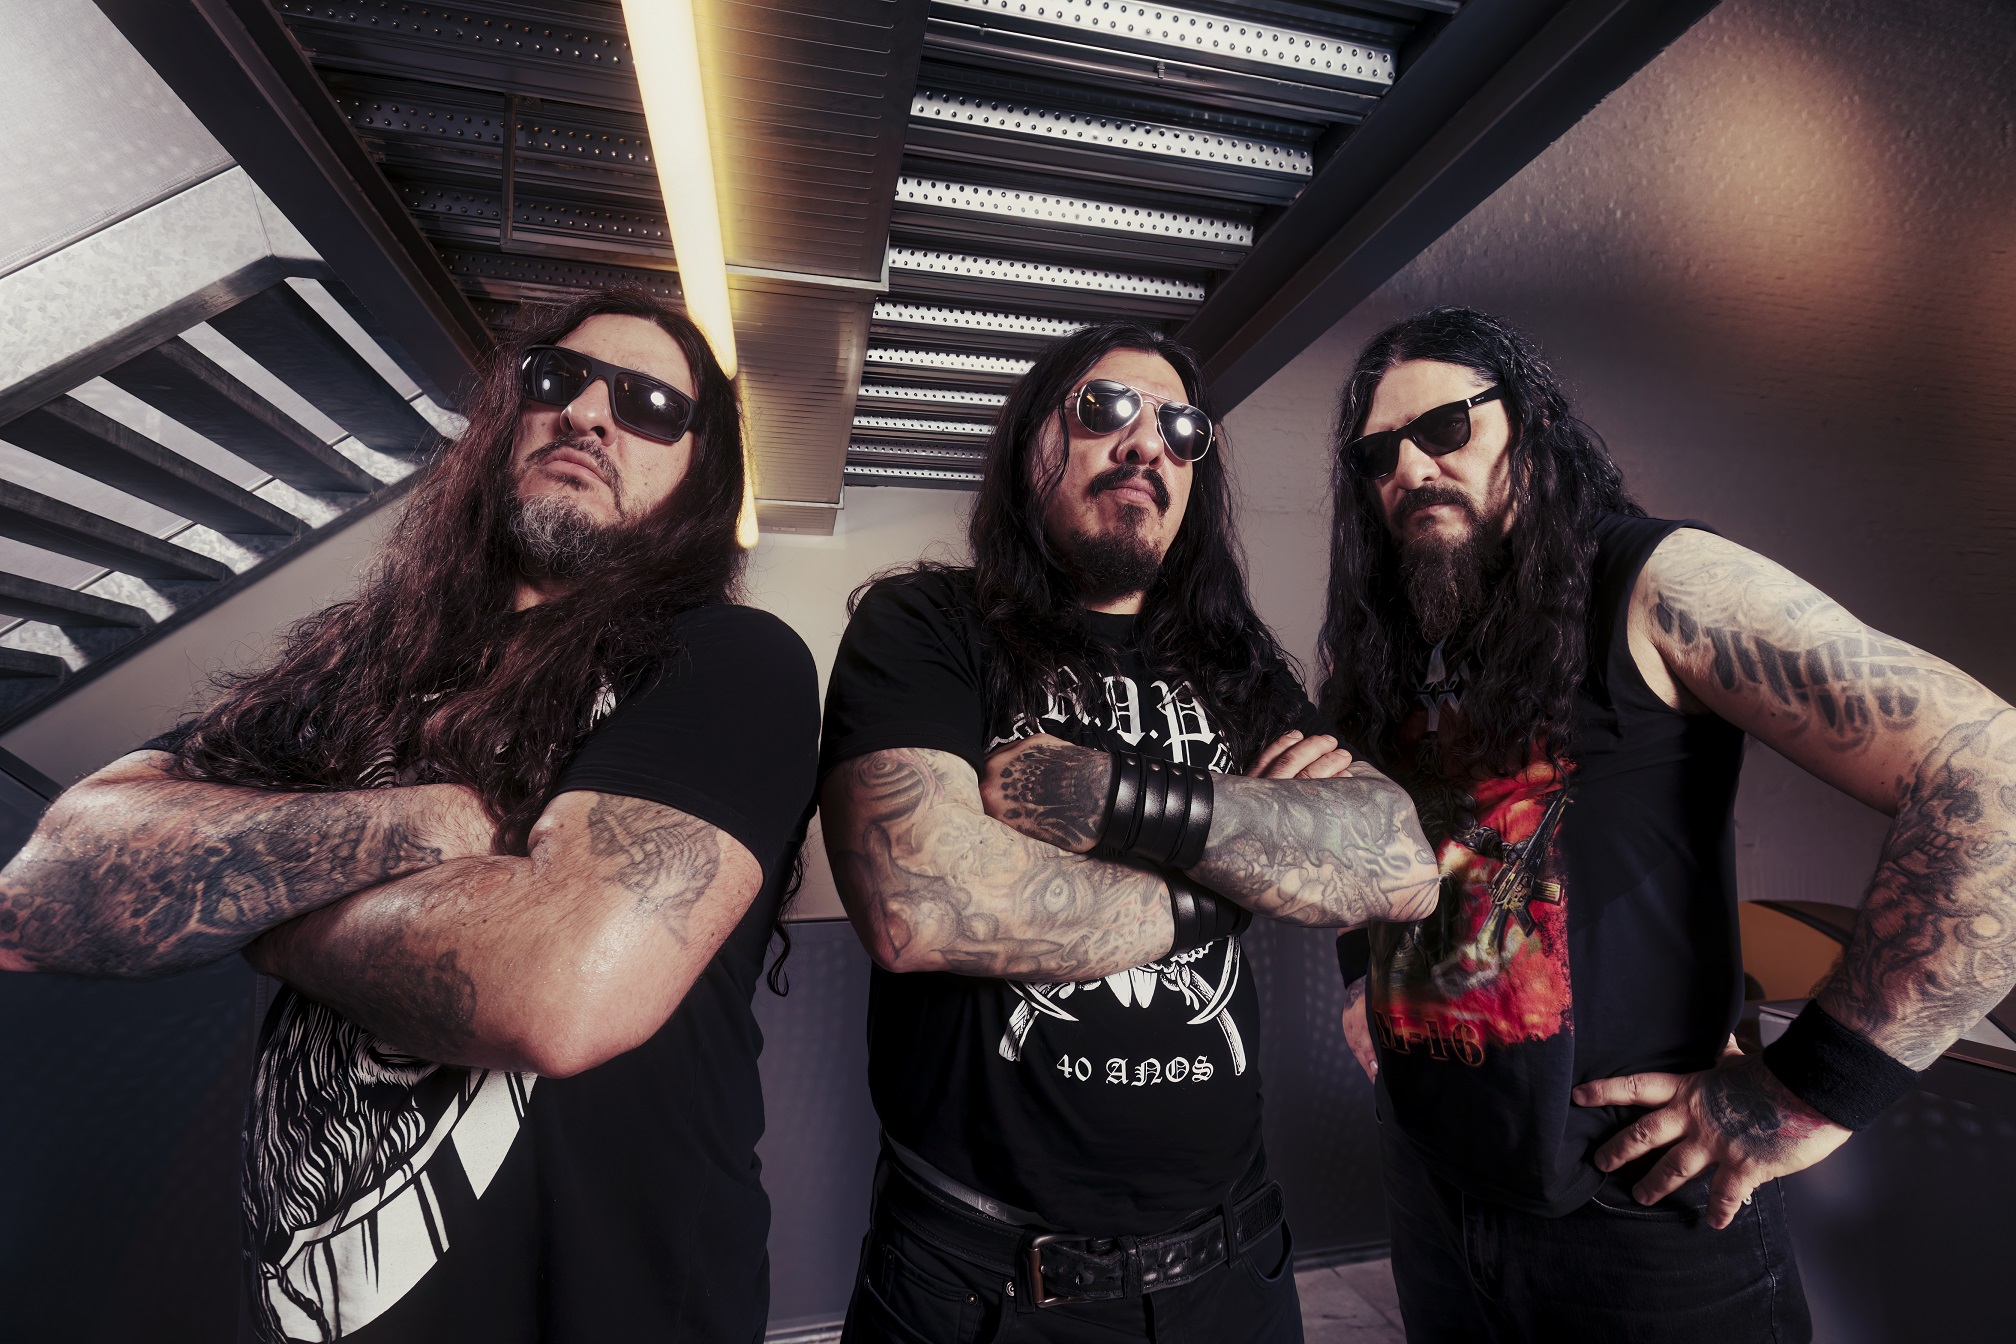 Krisiun traz brutal death metal para Porto Alegre neste sábado (4)